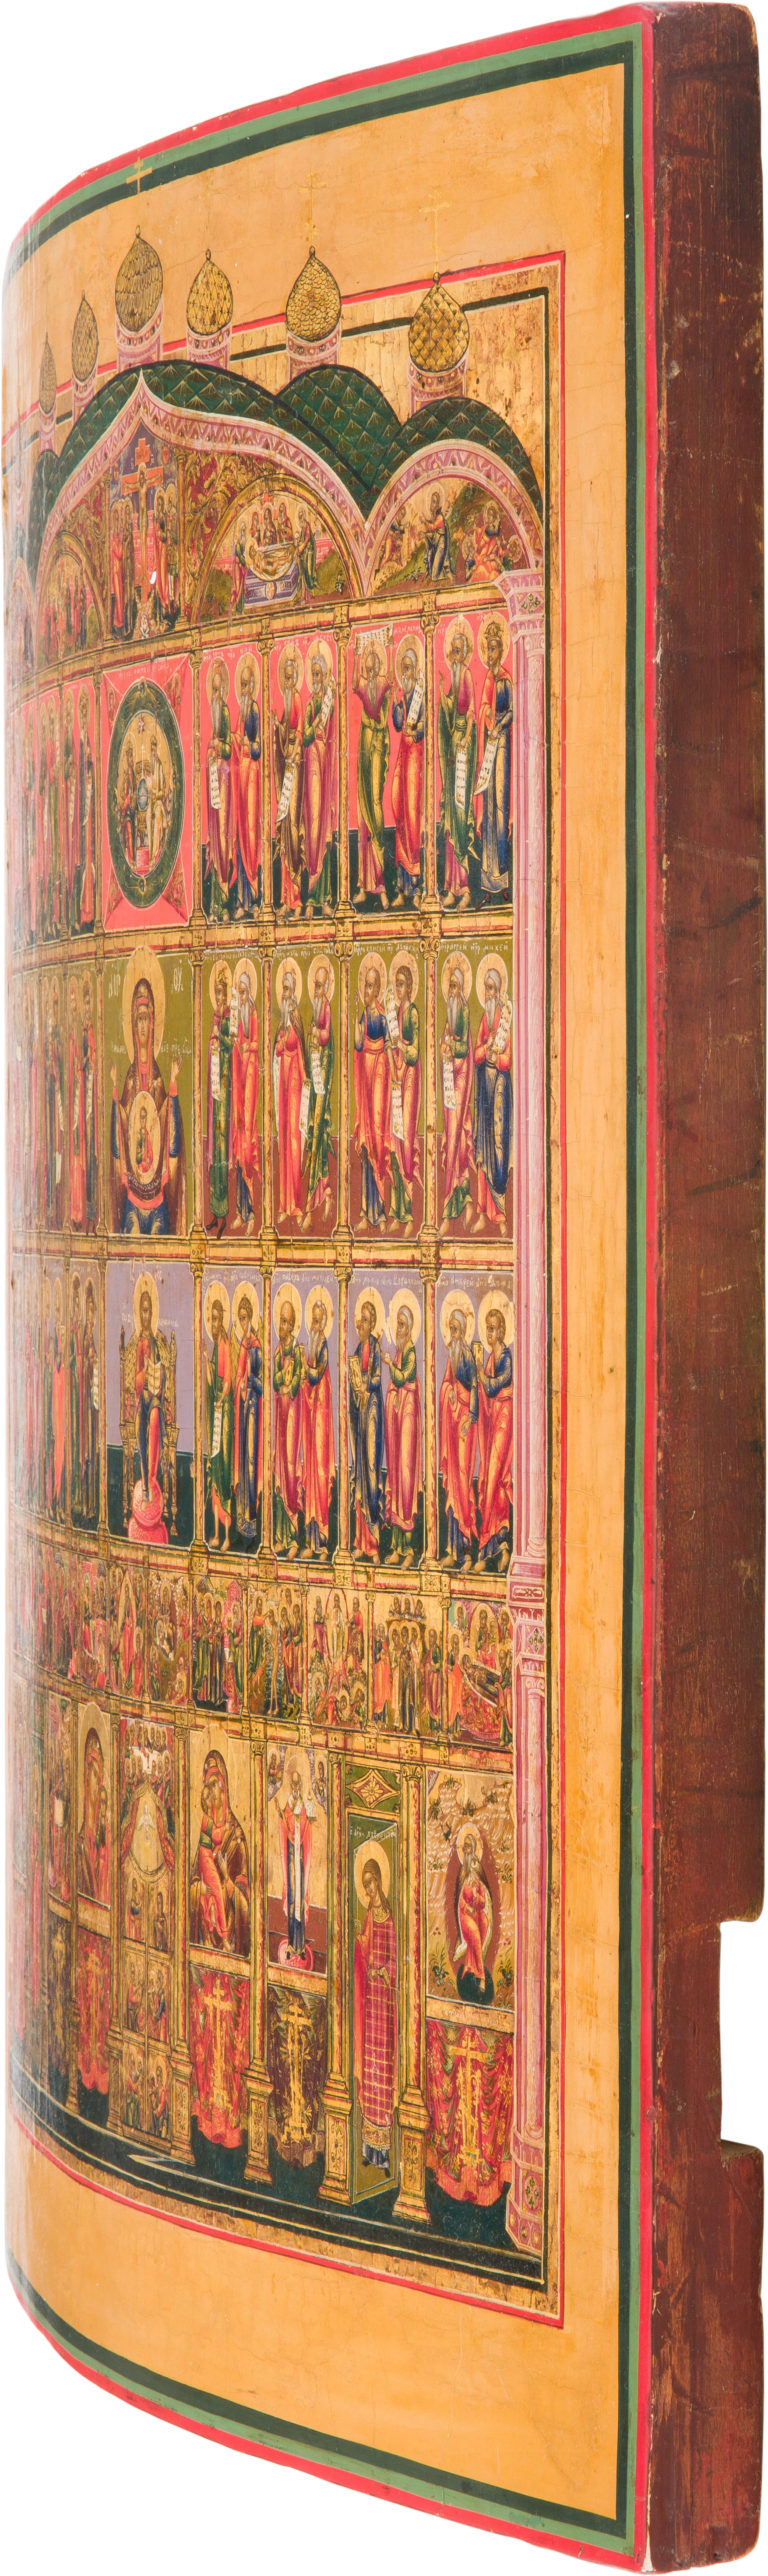 The Iconostasis (“The Image of the One, Holy, Catholic, and Apostolic Church”)